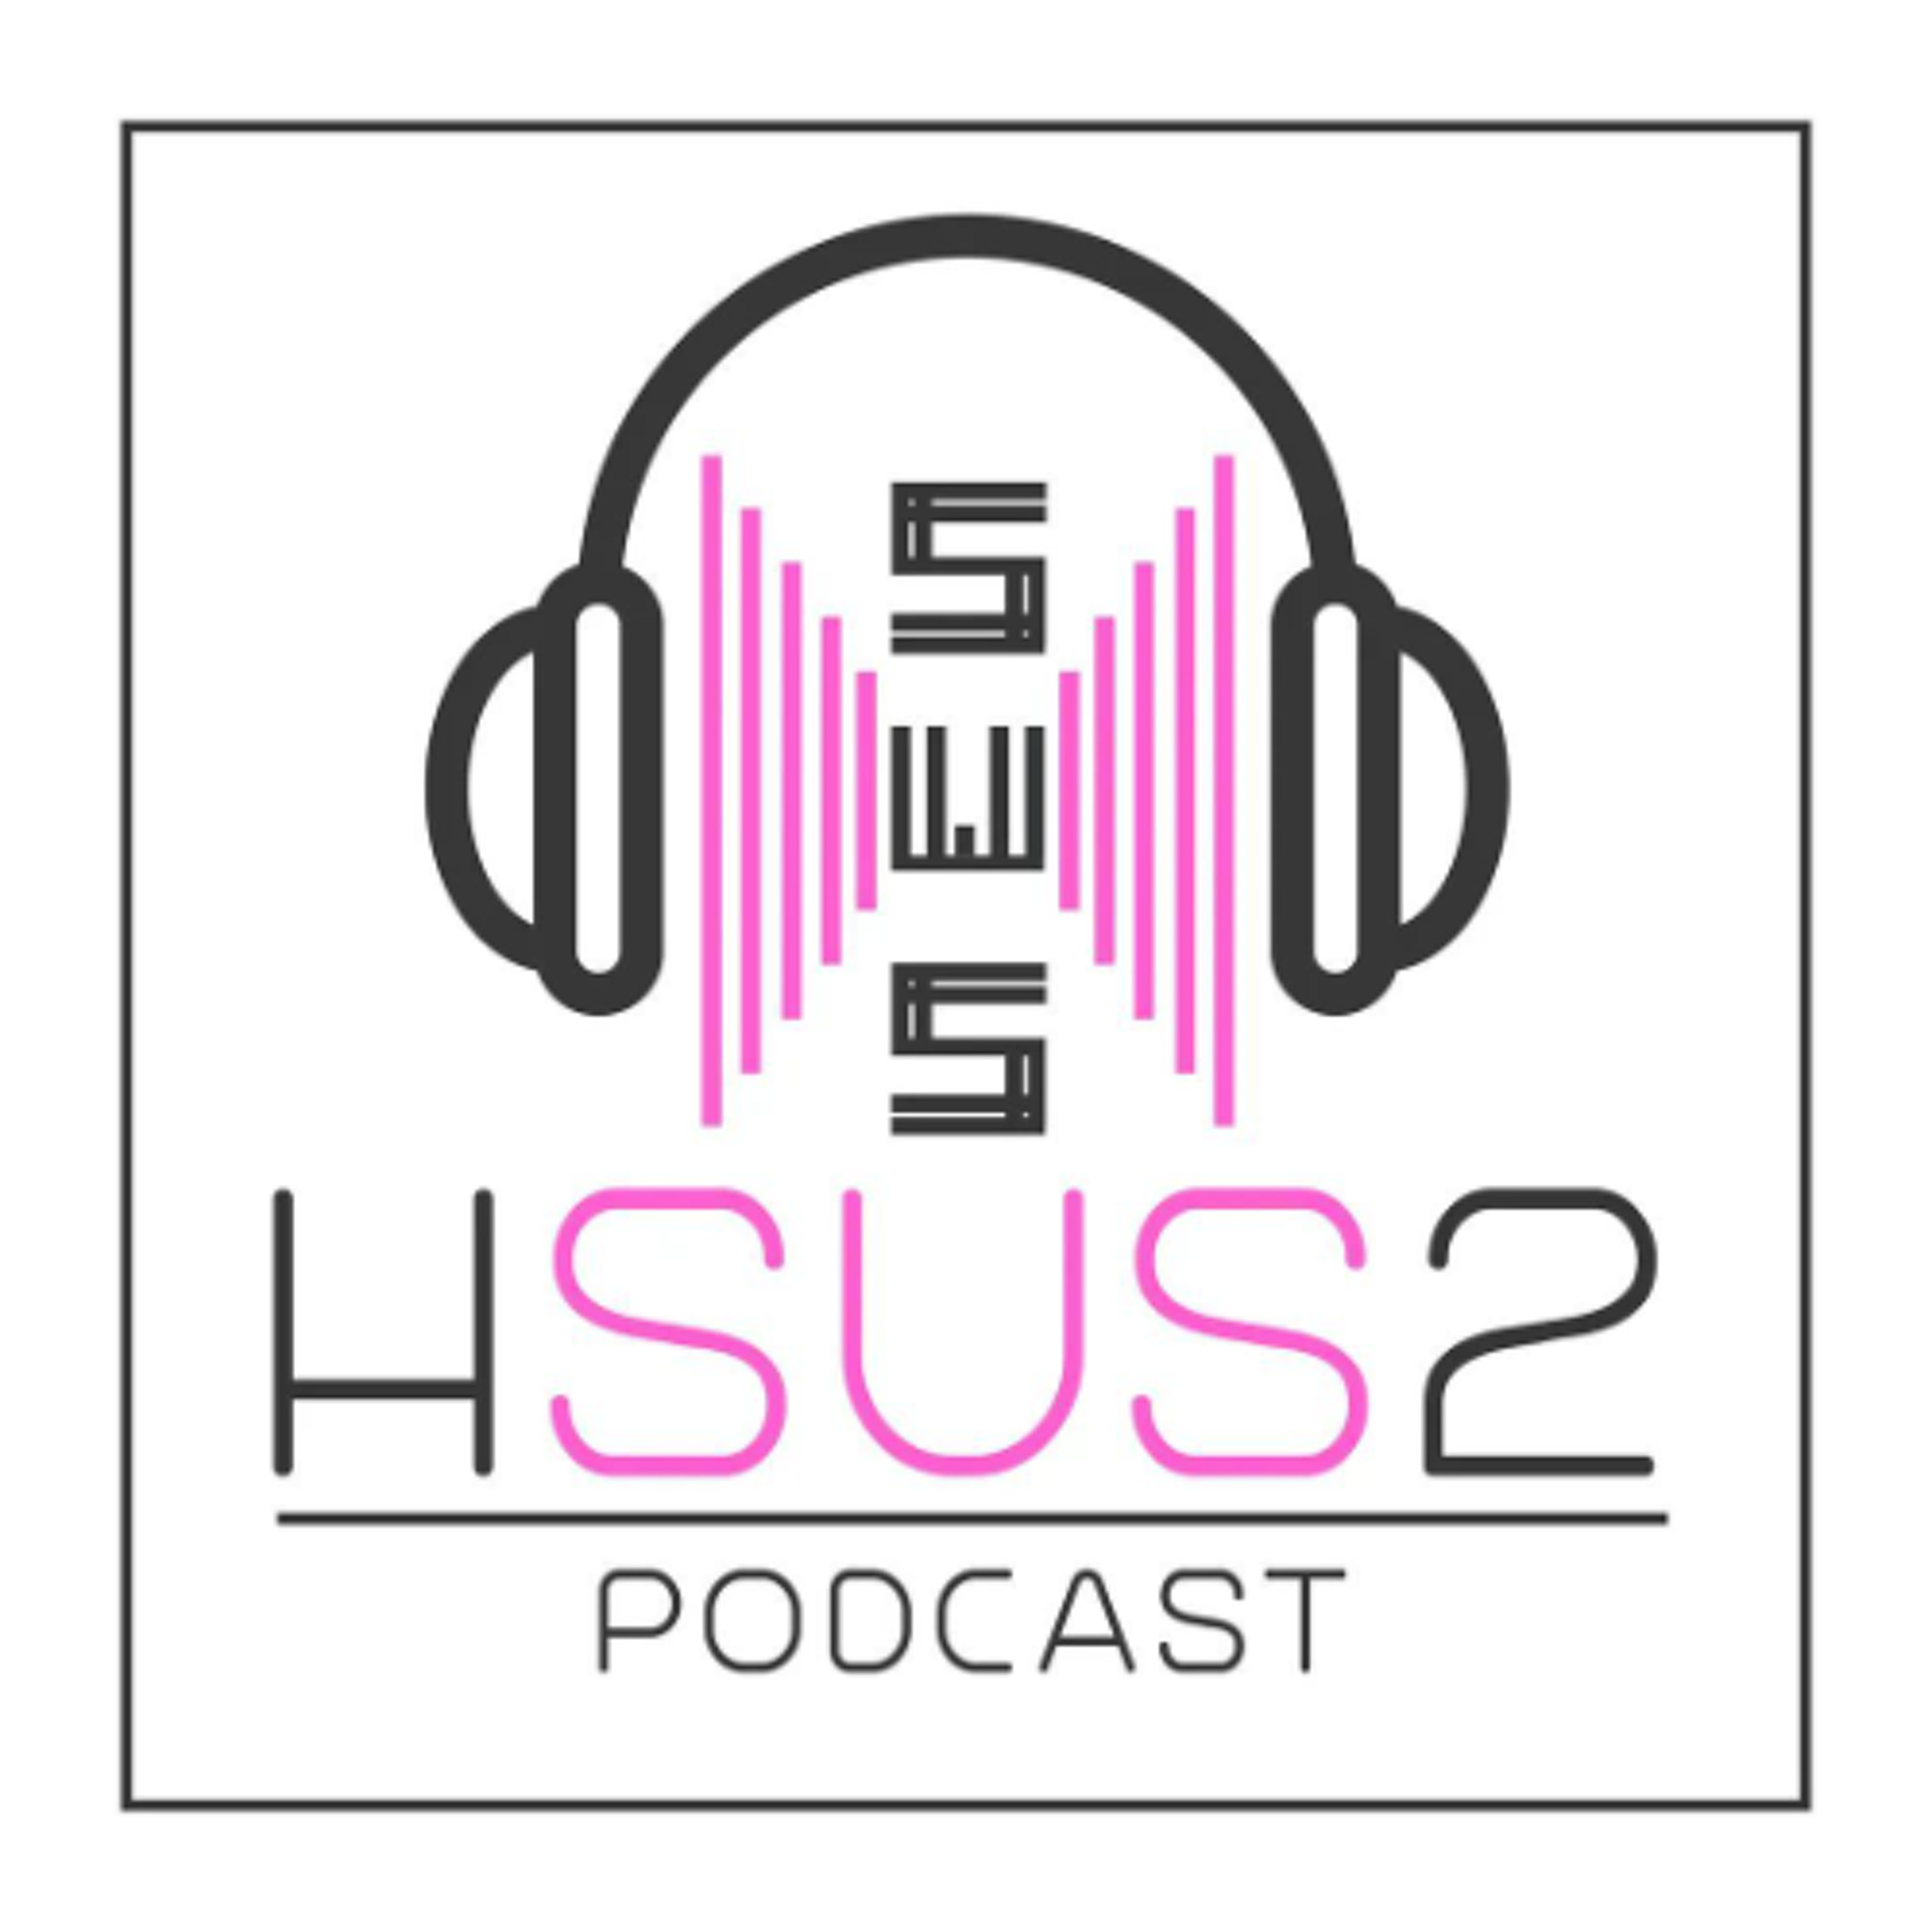 Hsus2 - Hello Everybodyyyyyy!!!!!!!! | Live ครั้งแรกของพวกเราคร้าบบบบบบบ